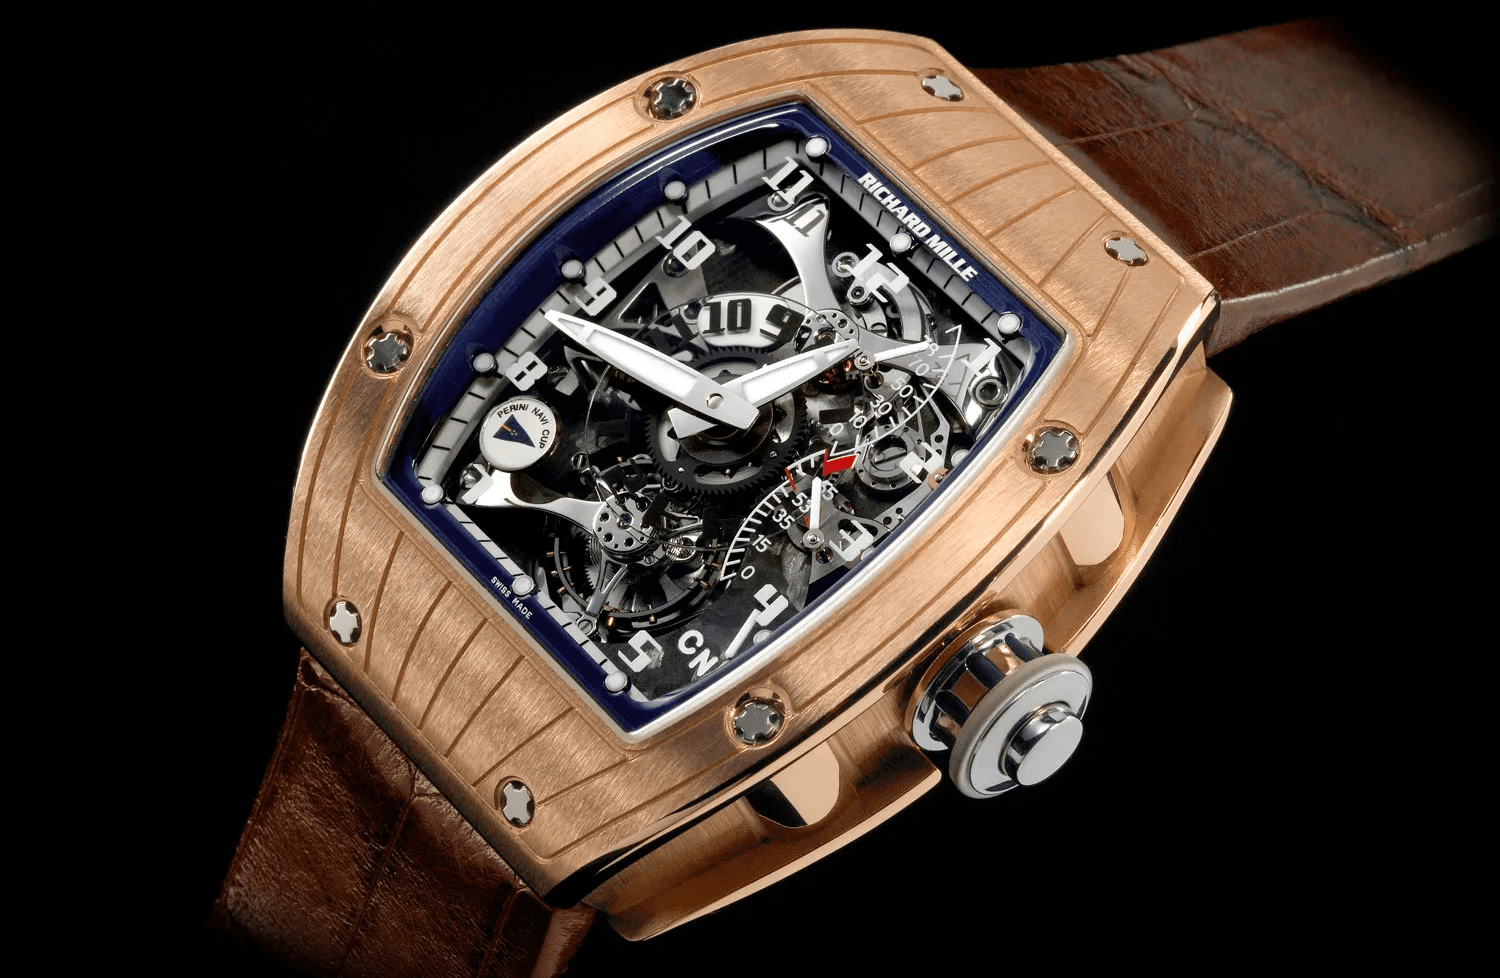 Orologi Richard Mille – Uno dei marchi di orologi più in voga del momento